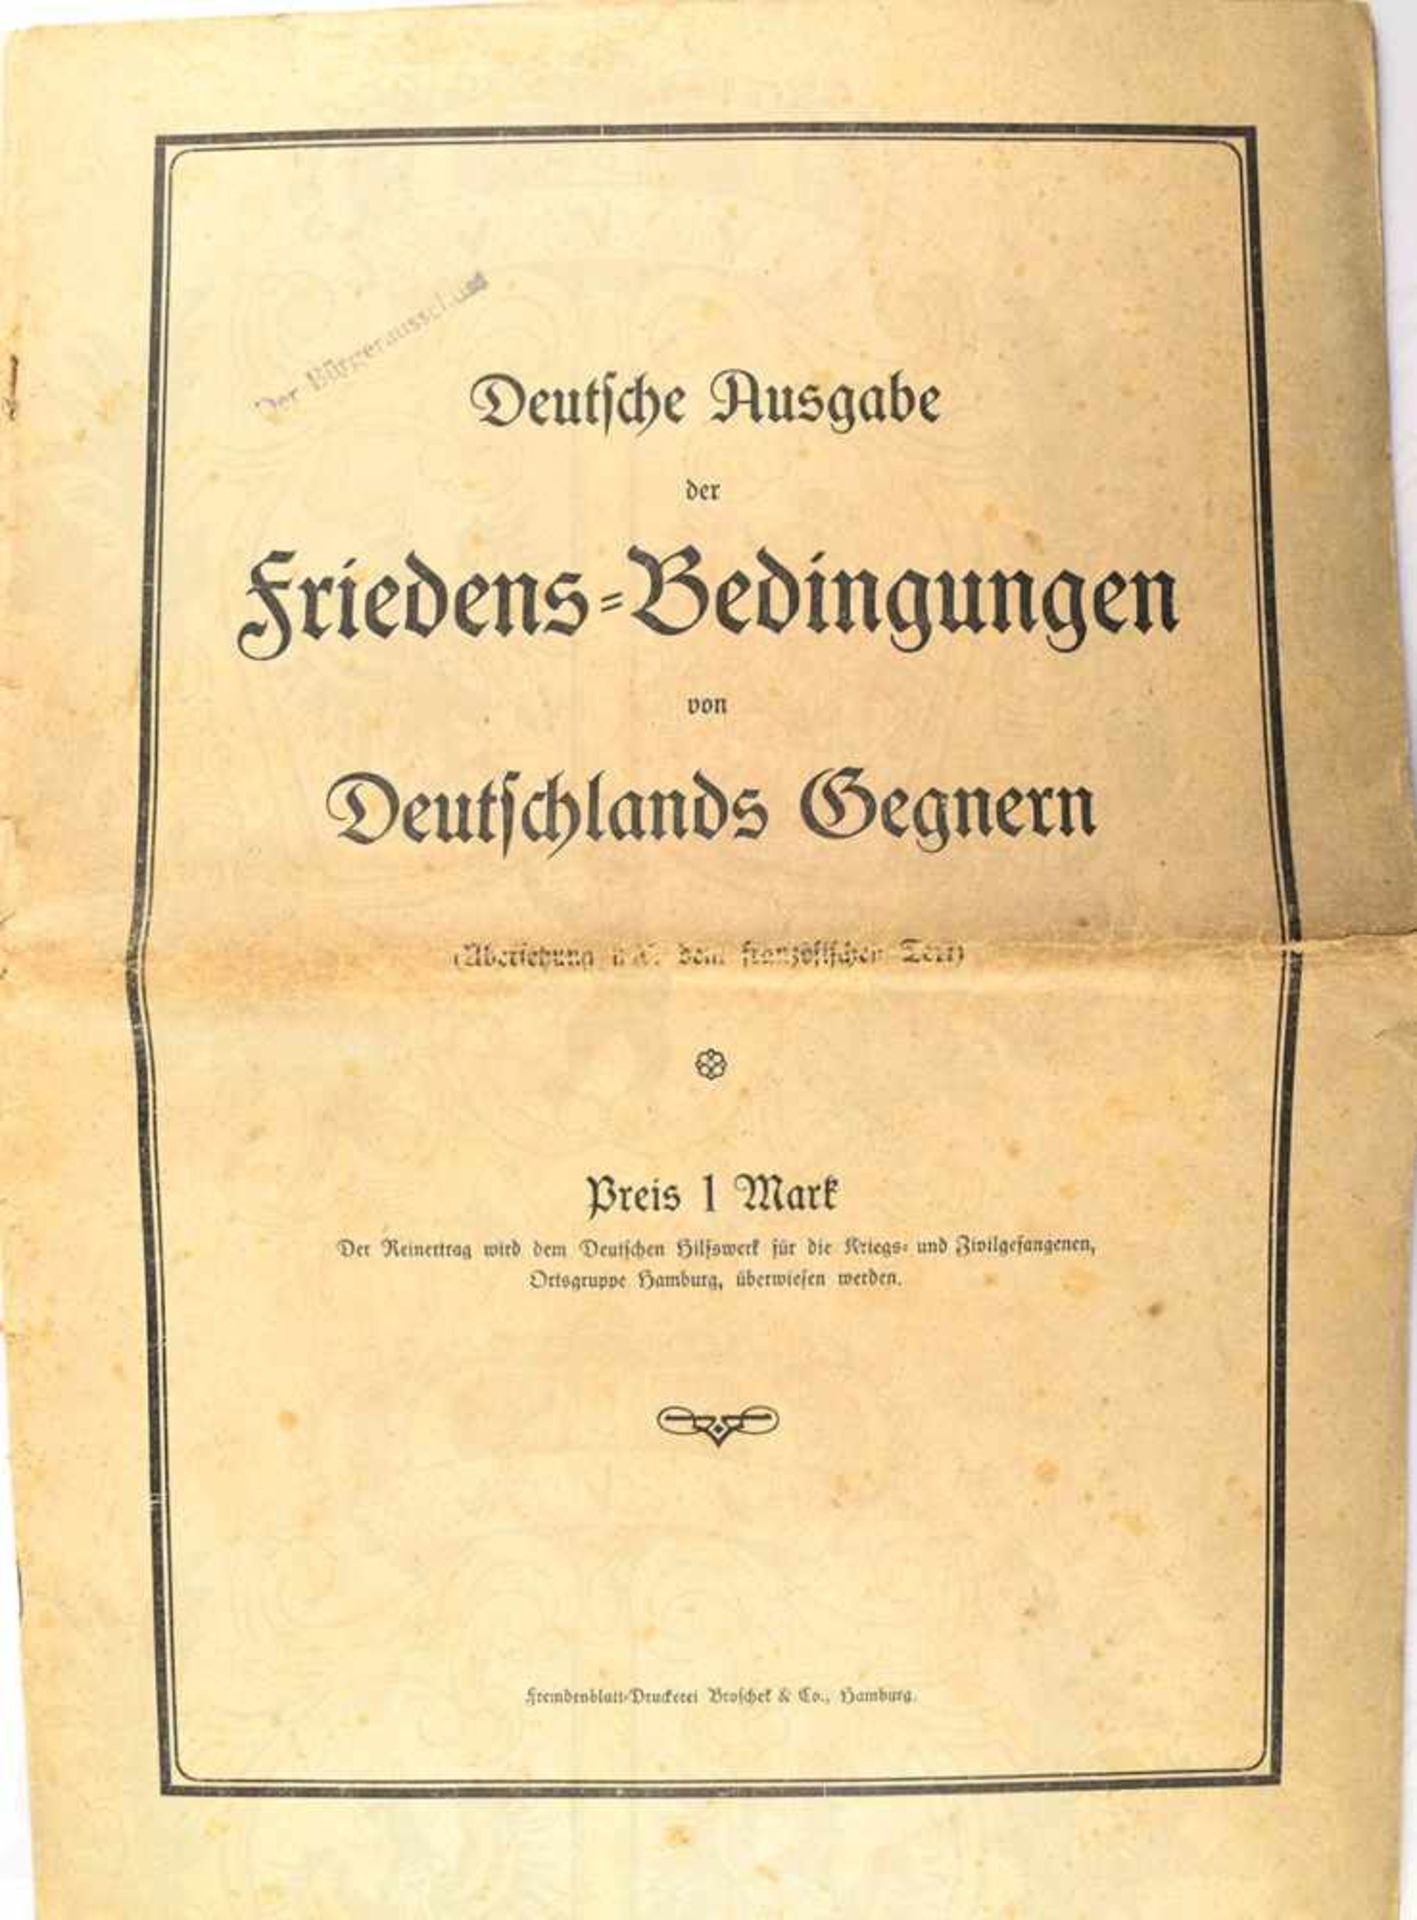 FRIEDENSBEDINGUNGEN VON DEUTSCHLANDS GEGNERN, (Versailler Vertrag), Dt. Ausgabe, Hamburg 1920, 46